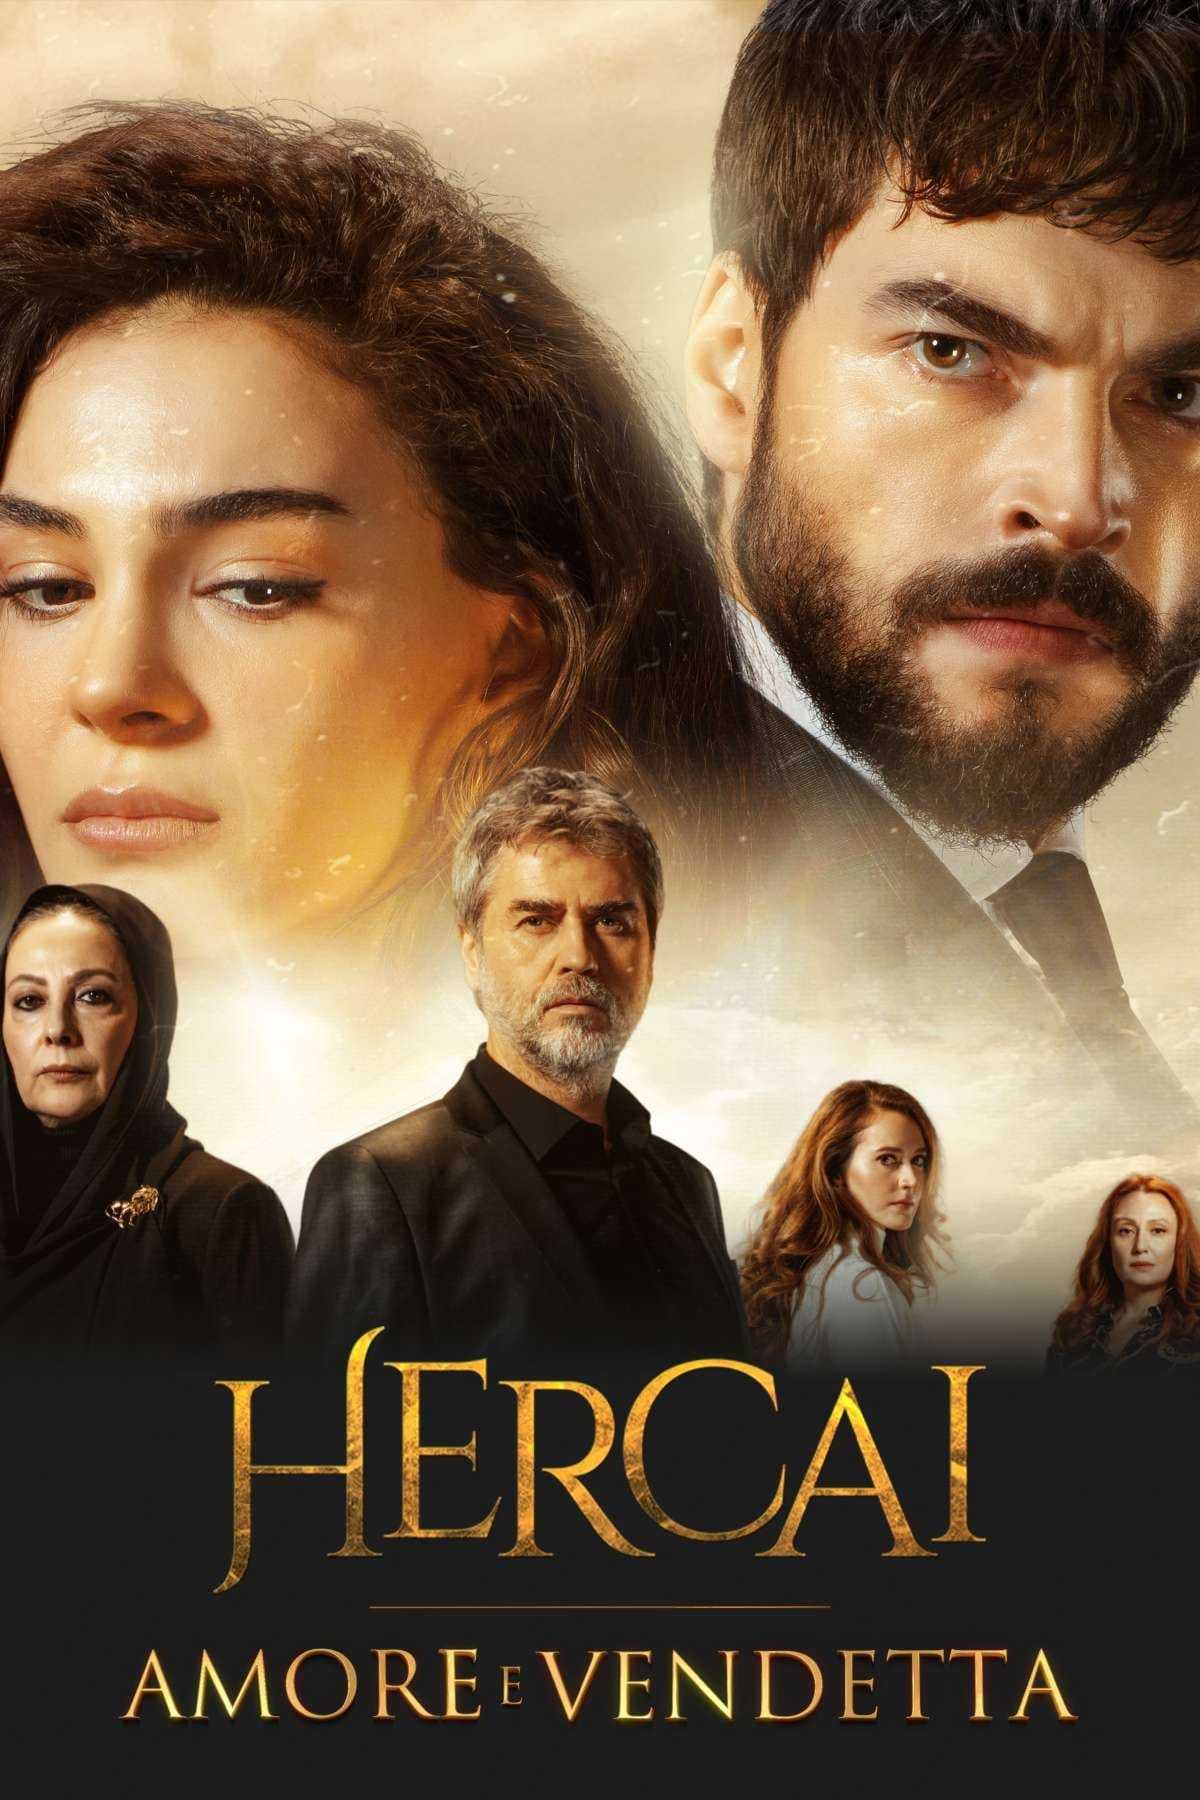 Hercai - Amore e vendetta in streaming